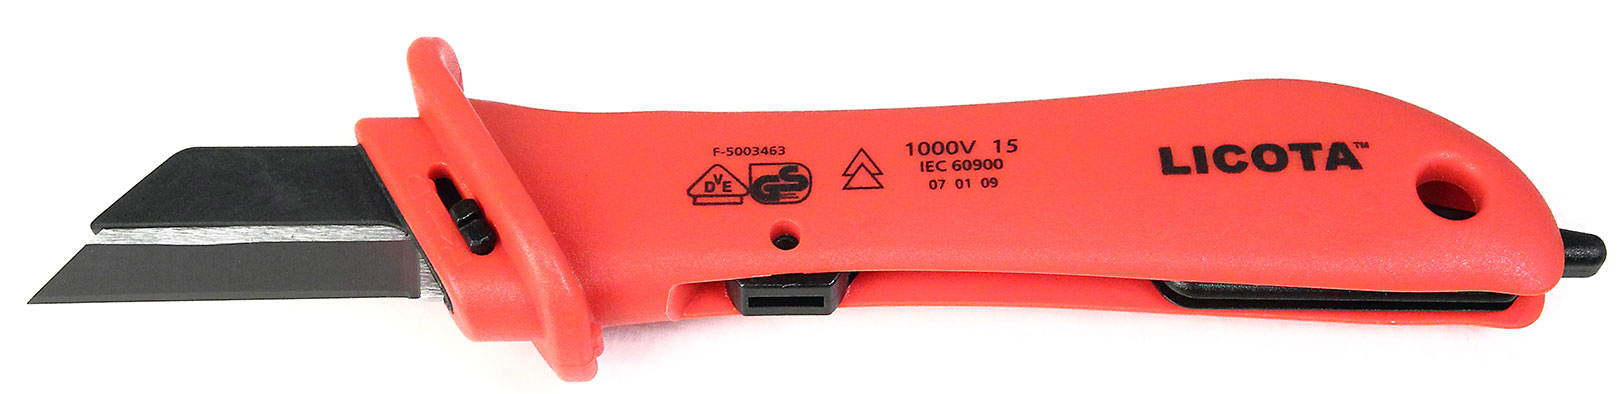 Нож для удаления оболочки кабеля с откидной защитой VDE 1000V Licota  AKD-V009_2